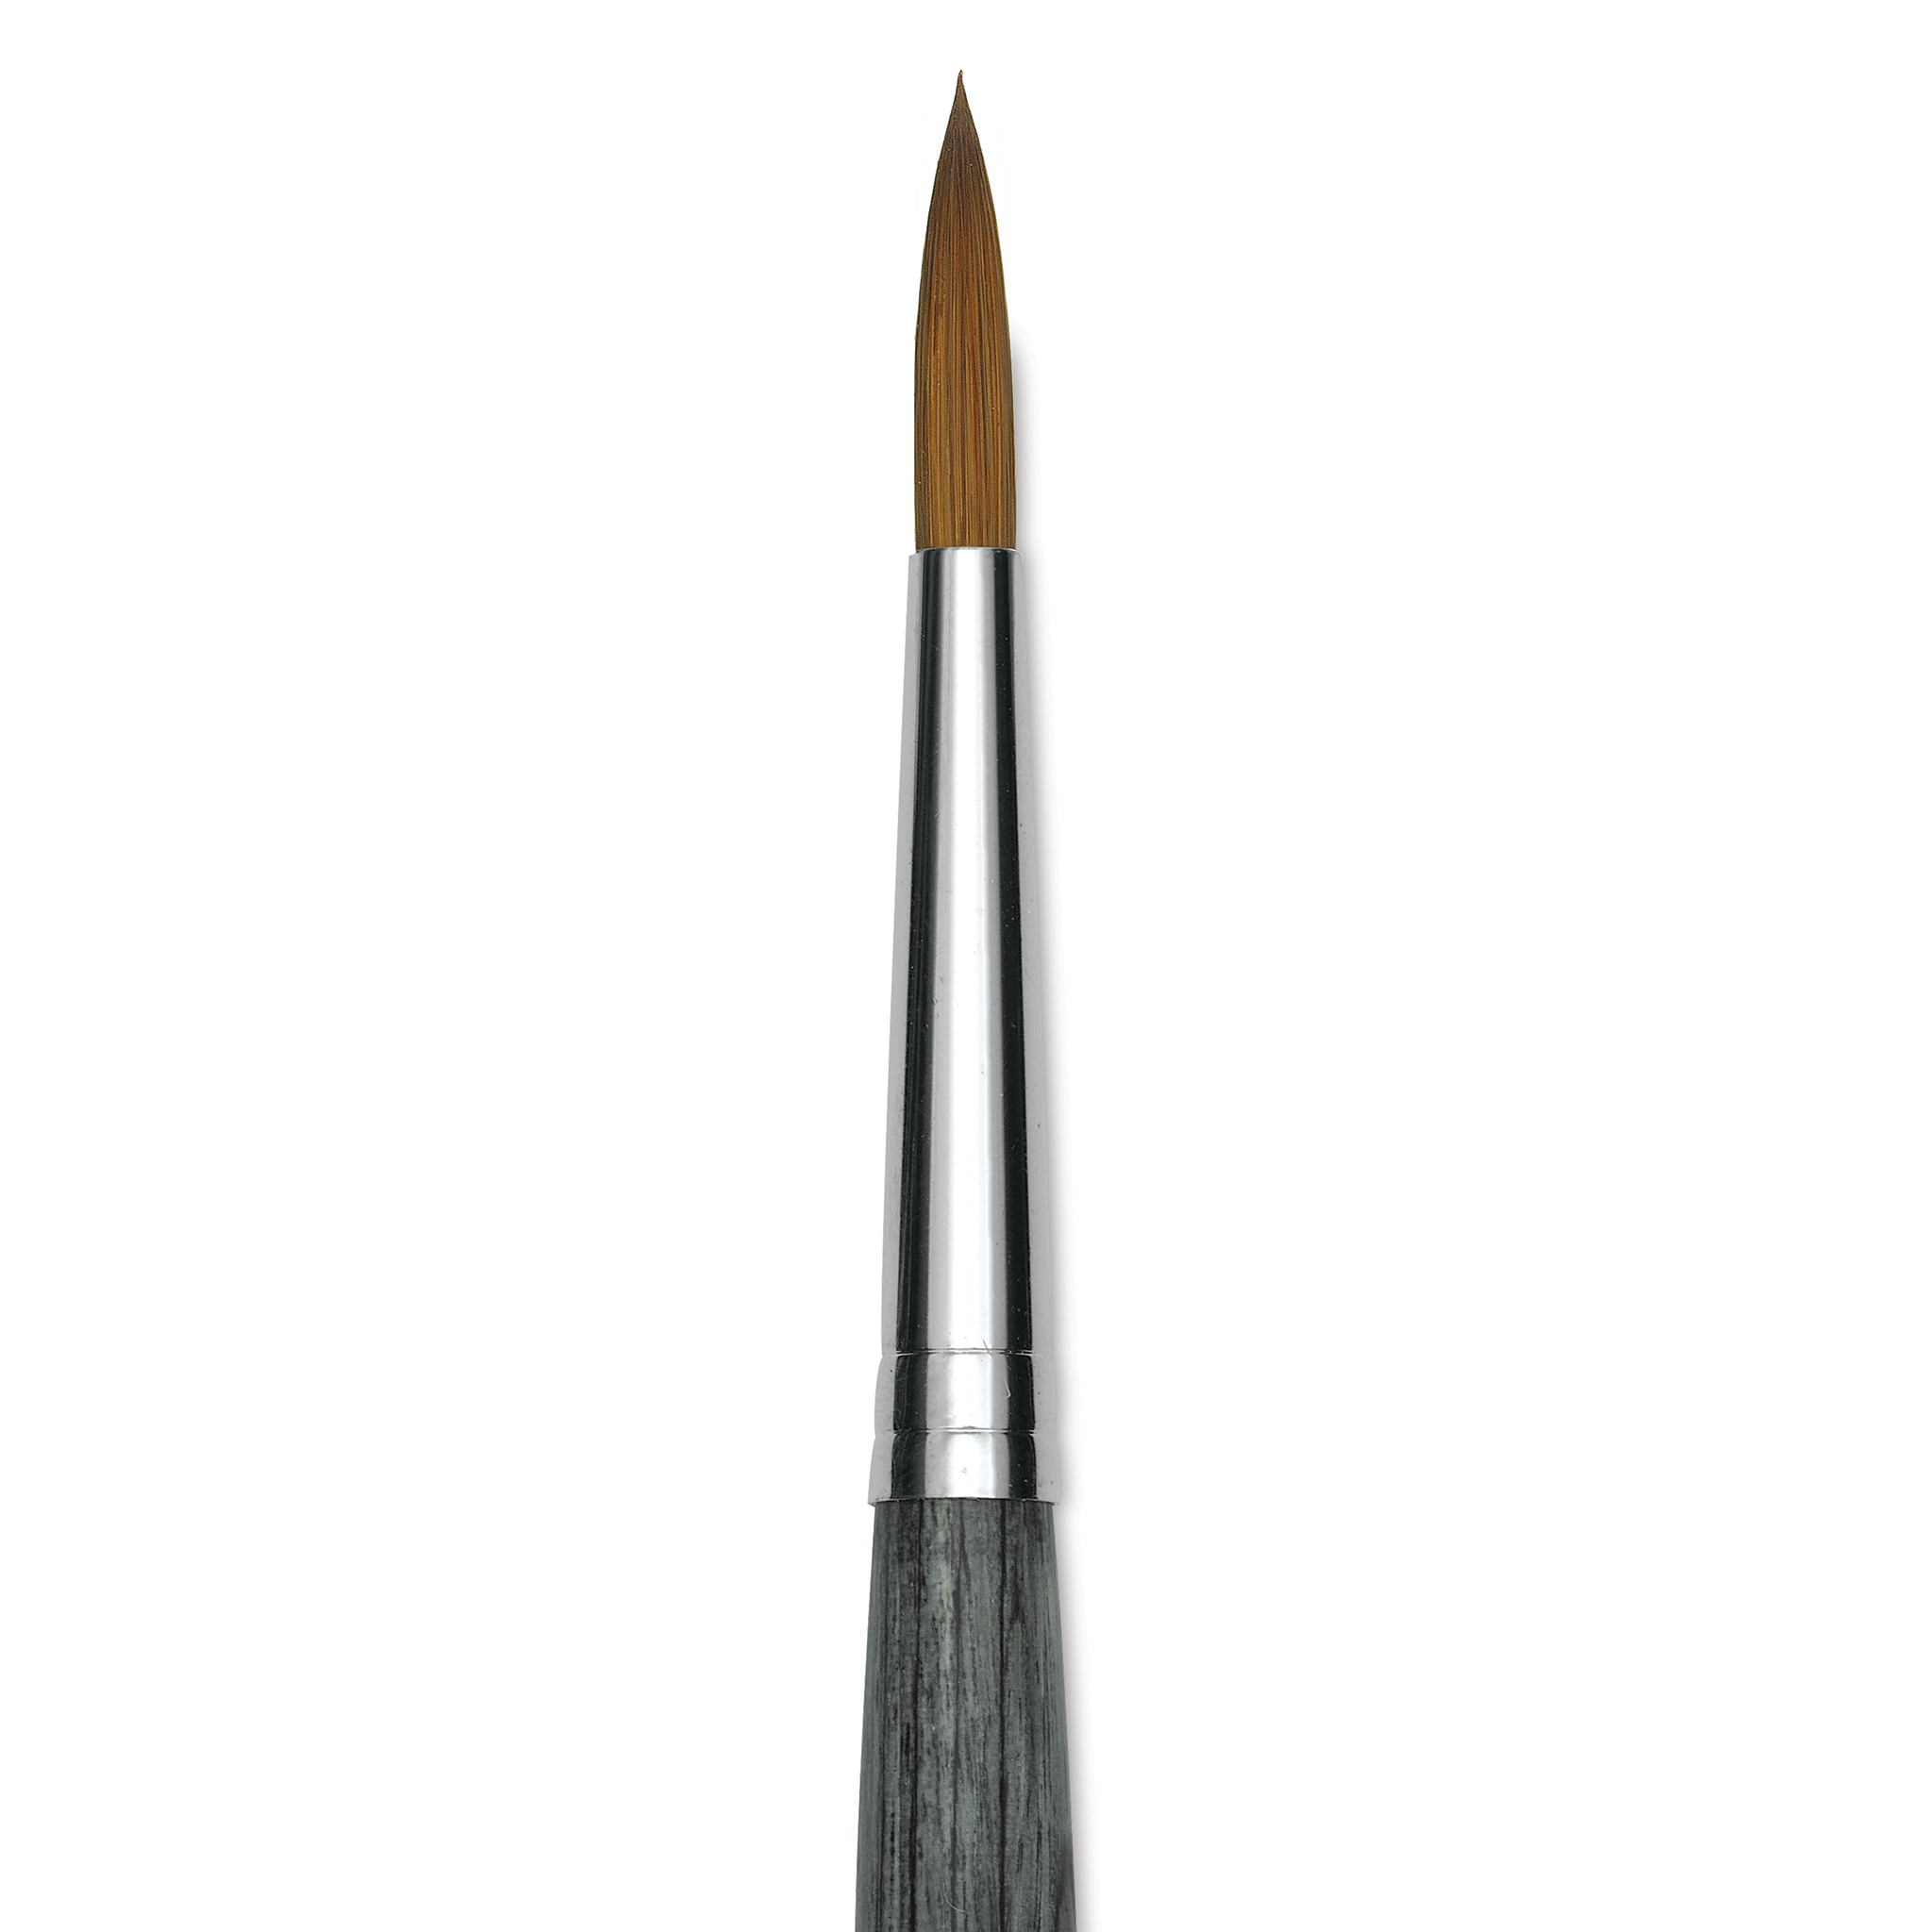 Da Vinci Colineo Series 5522 Synthetic Kolinsky Brush, Size 4 Flat